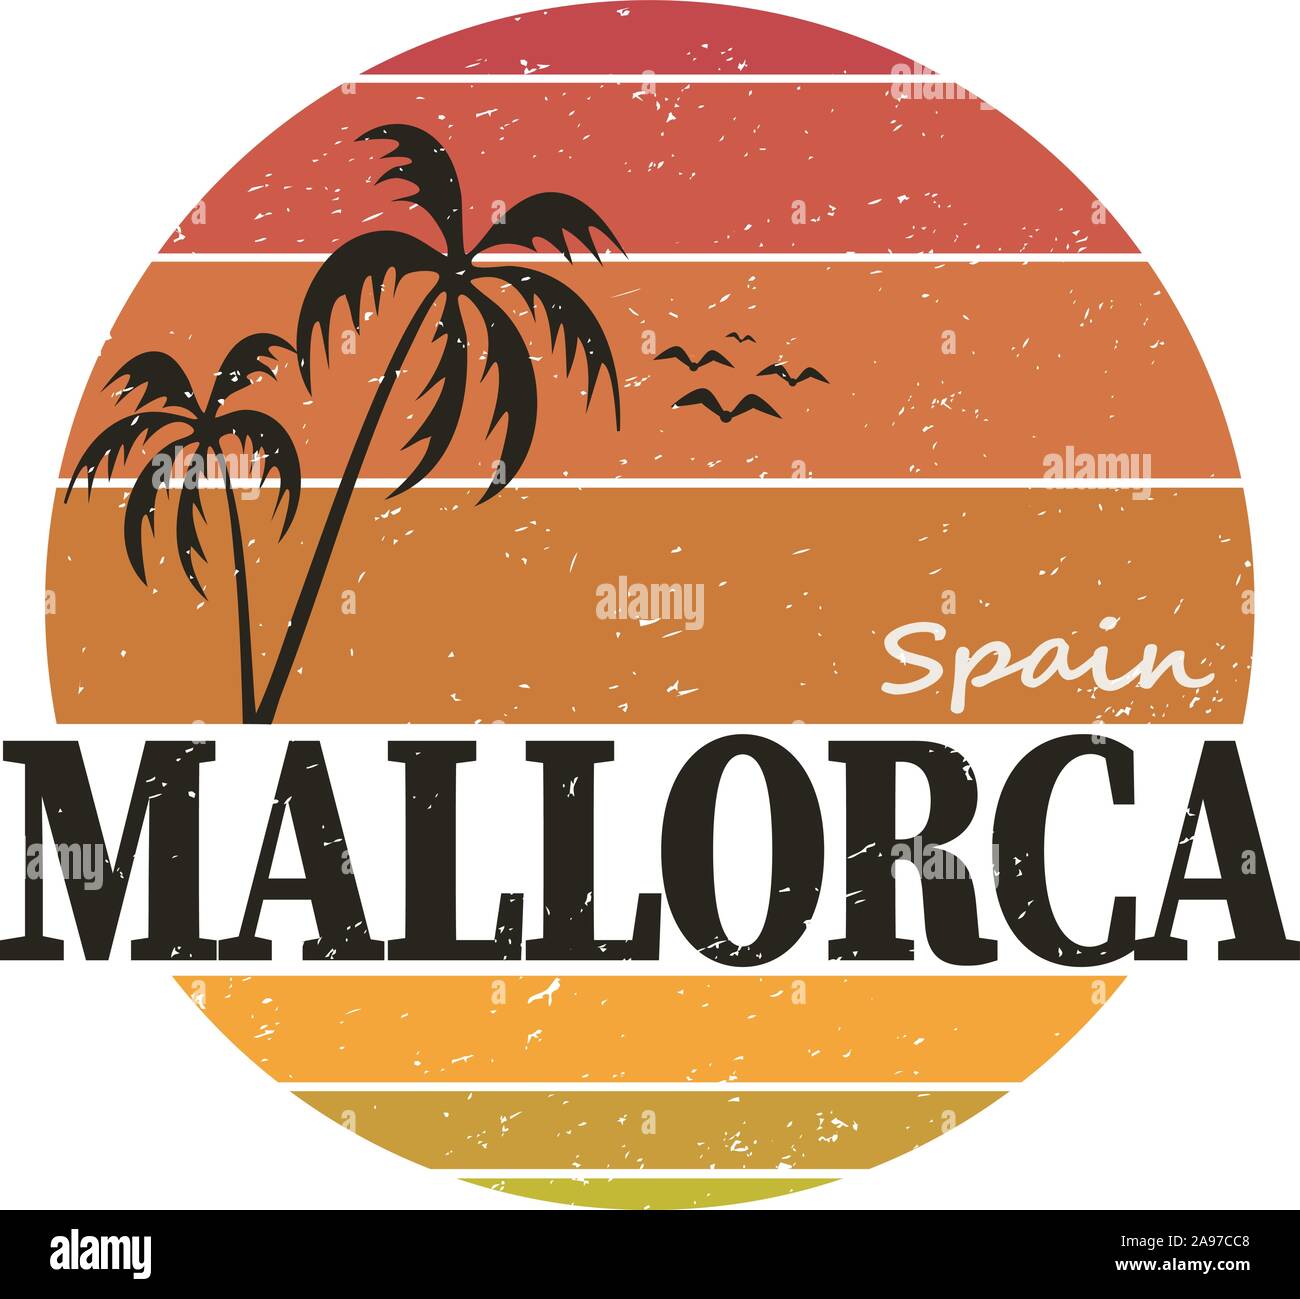 Vektor Sommer Abbildung: Mallorca, Balearen, Spanien. Runde isolierte Elemente auf weißem Hintergrund. Kann als Aufkleber, Druck für T-Shirts verwendet werden. Stock Vektor